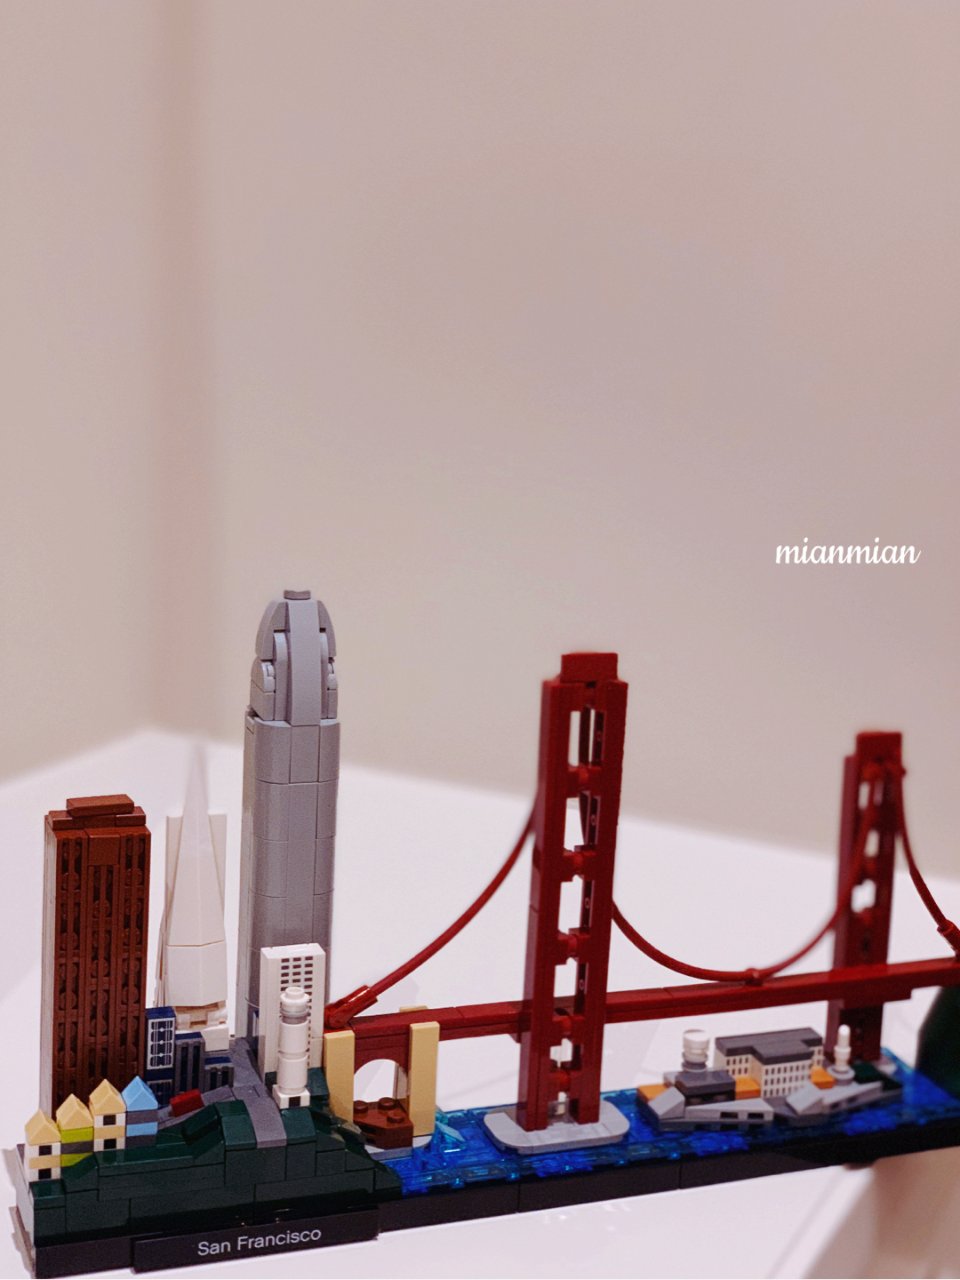 Lego 乐高,旧金山湾区